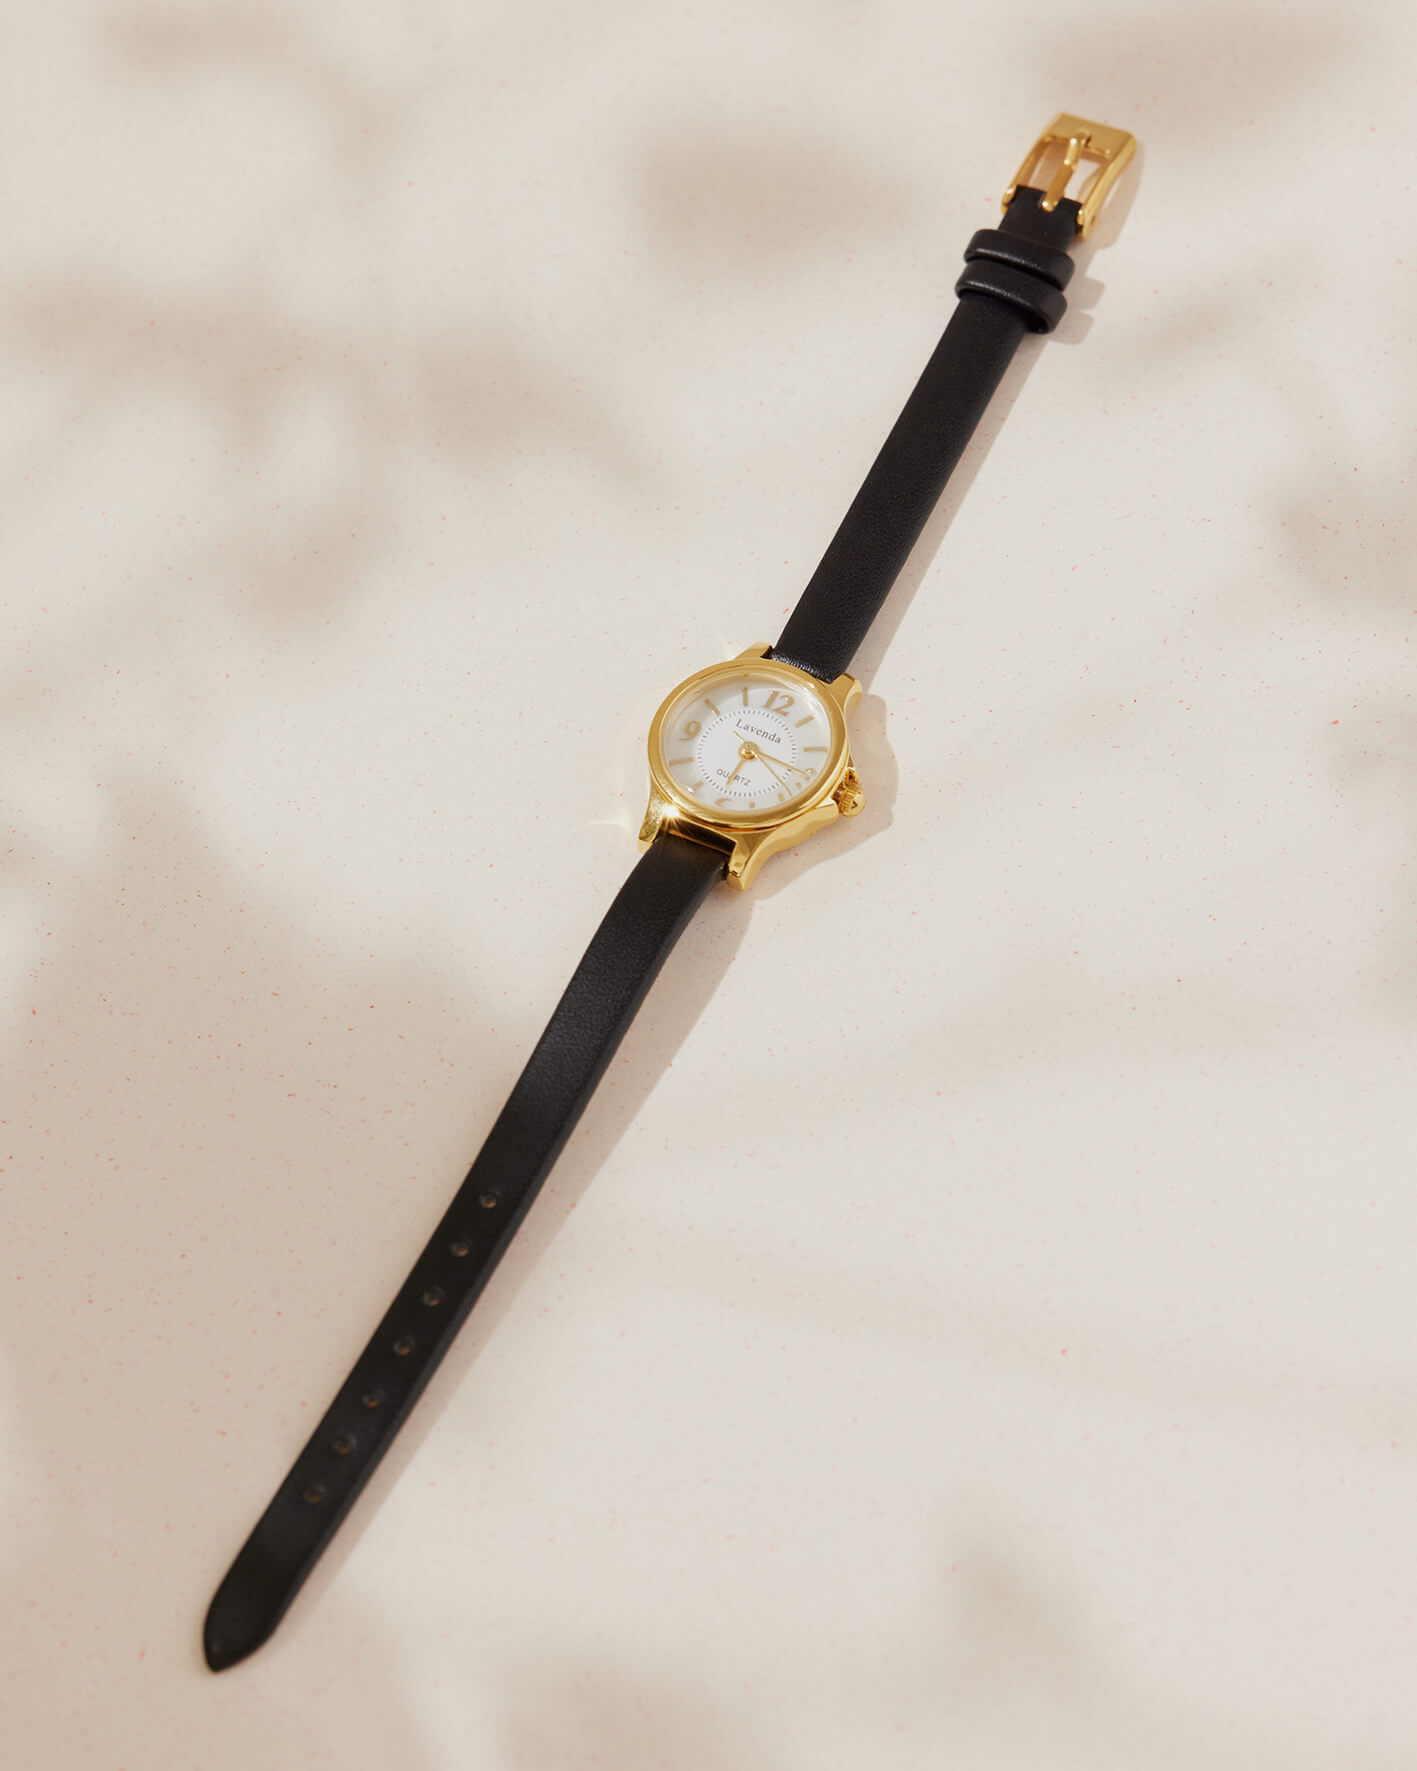 溫柔。韓國品牌LAVENDA手錶/3色 - 黑色 聖誕送禮 · 交換禮物專區|$1000↑ · 輕奢華專區🎁|人氣熱銷 | Best seller🔥|24hr快速出貨|新品上架 | New Arrival|手環 | Bracelets|手錶